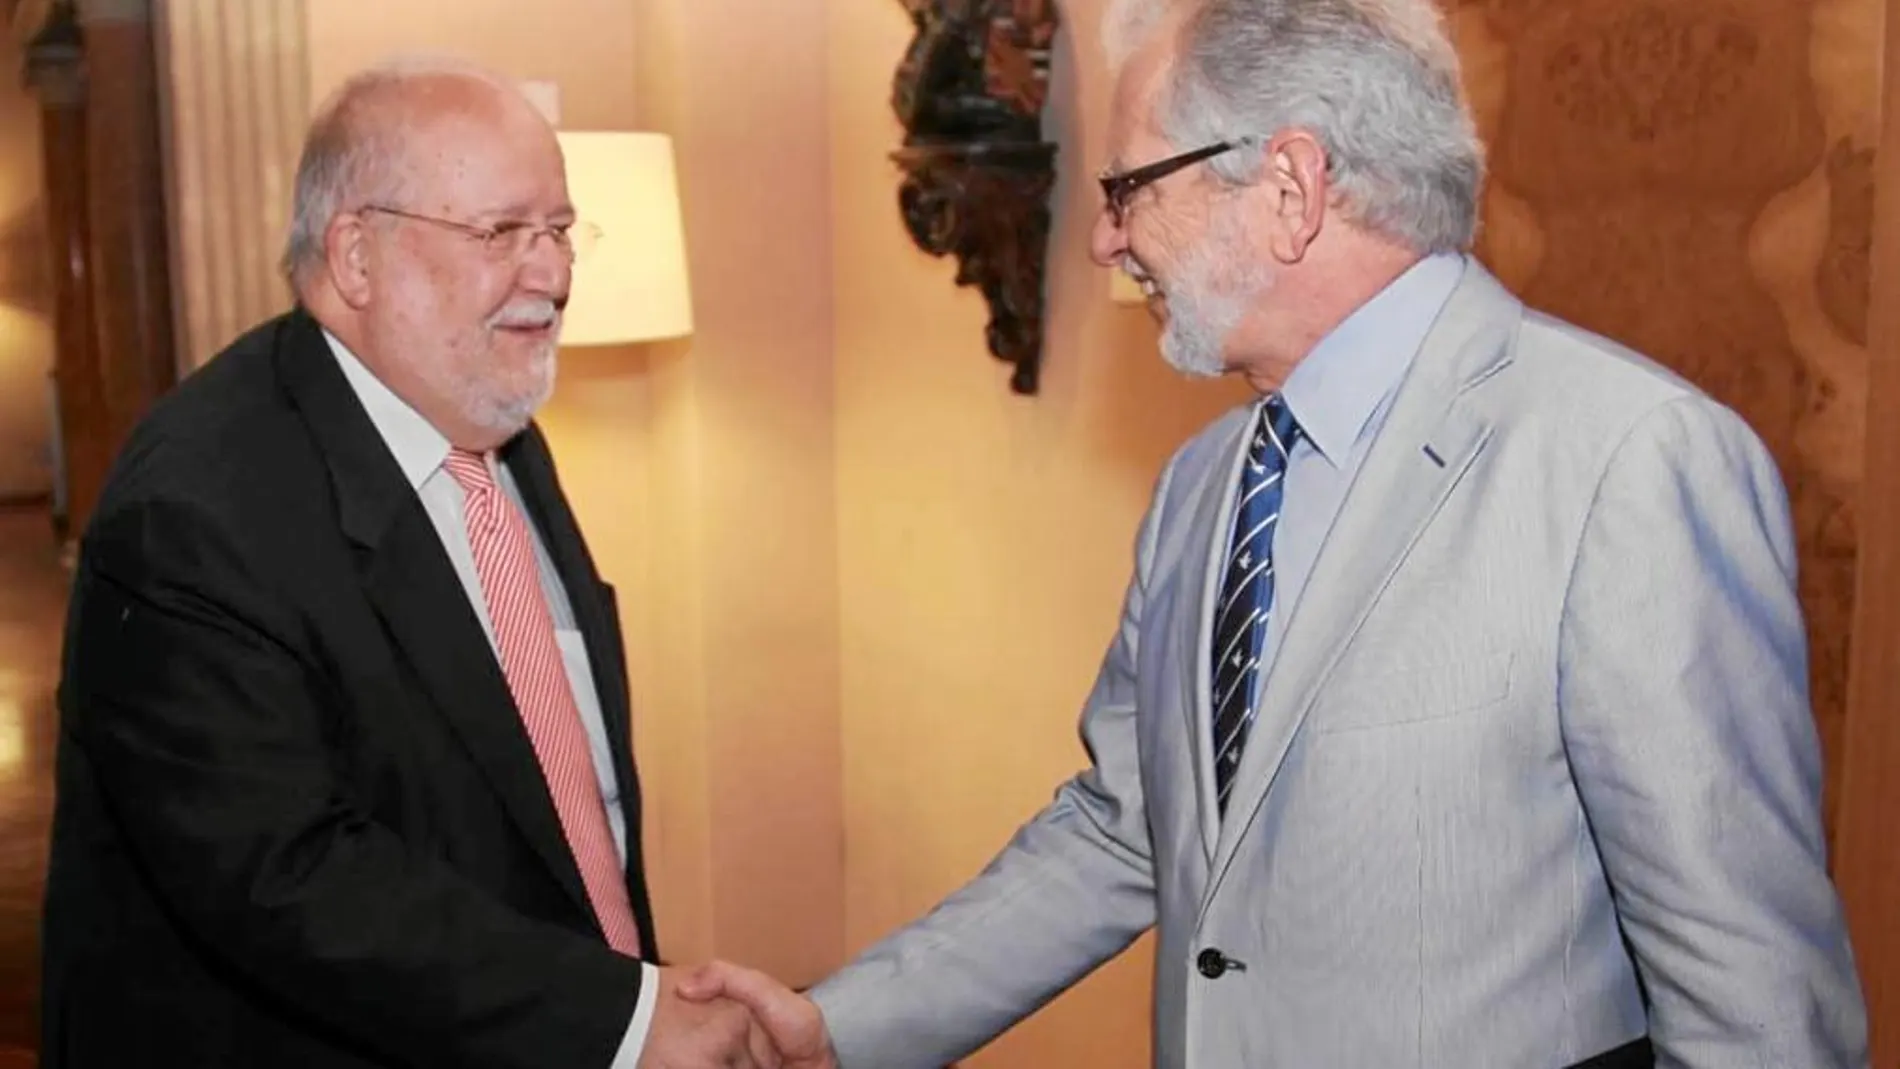 Salvador Esteve y Carles Viver Pi-Sunyer se reunieron ayer para establecer sinergias en el camino soberanista